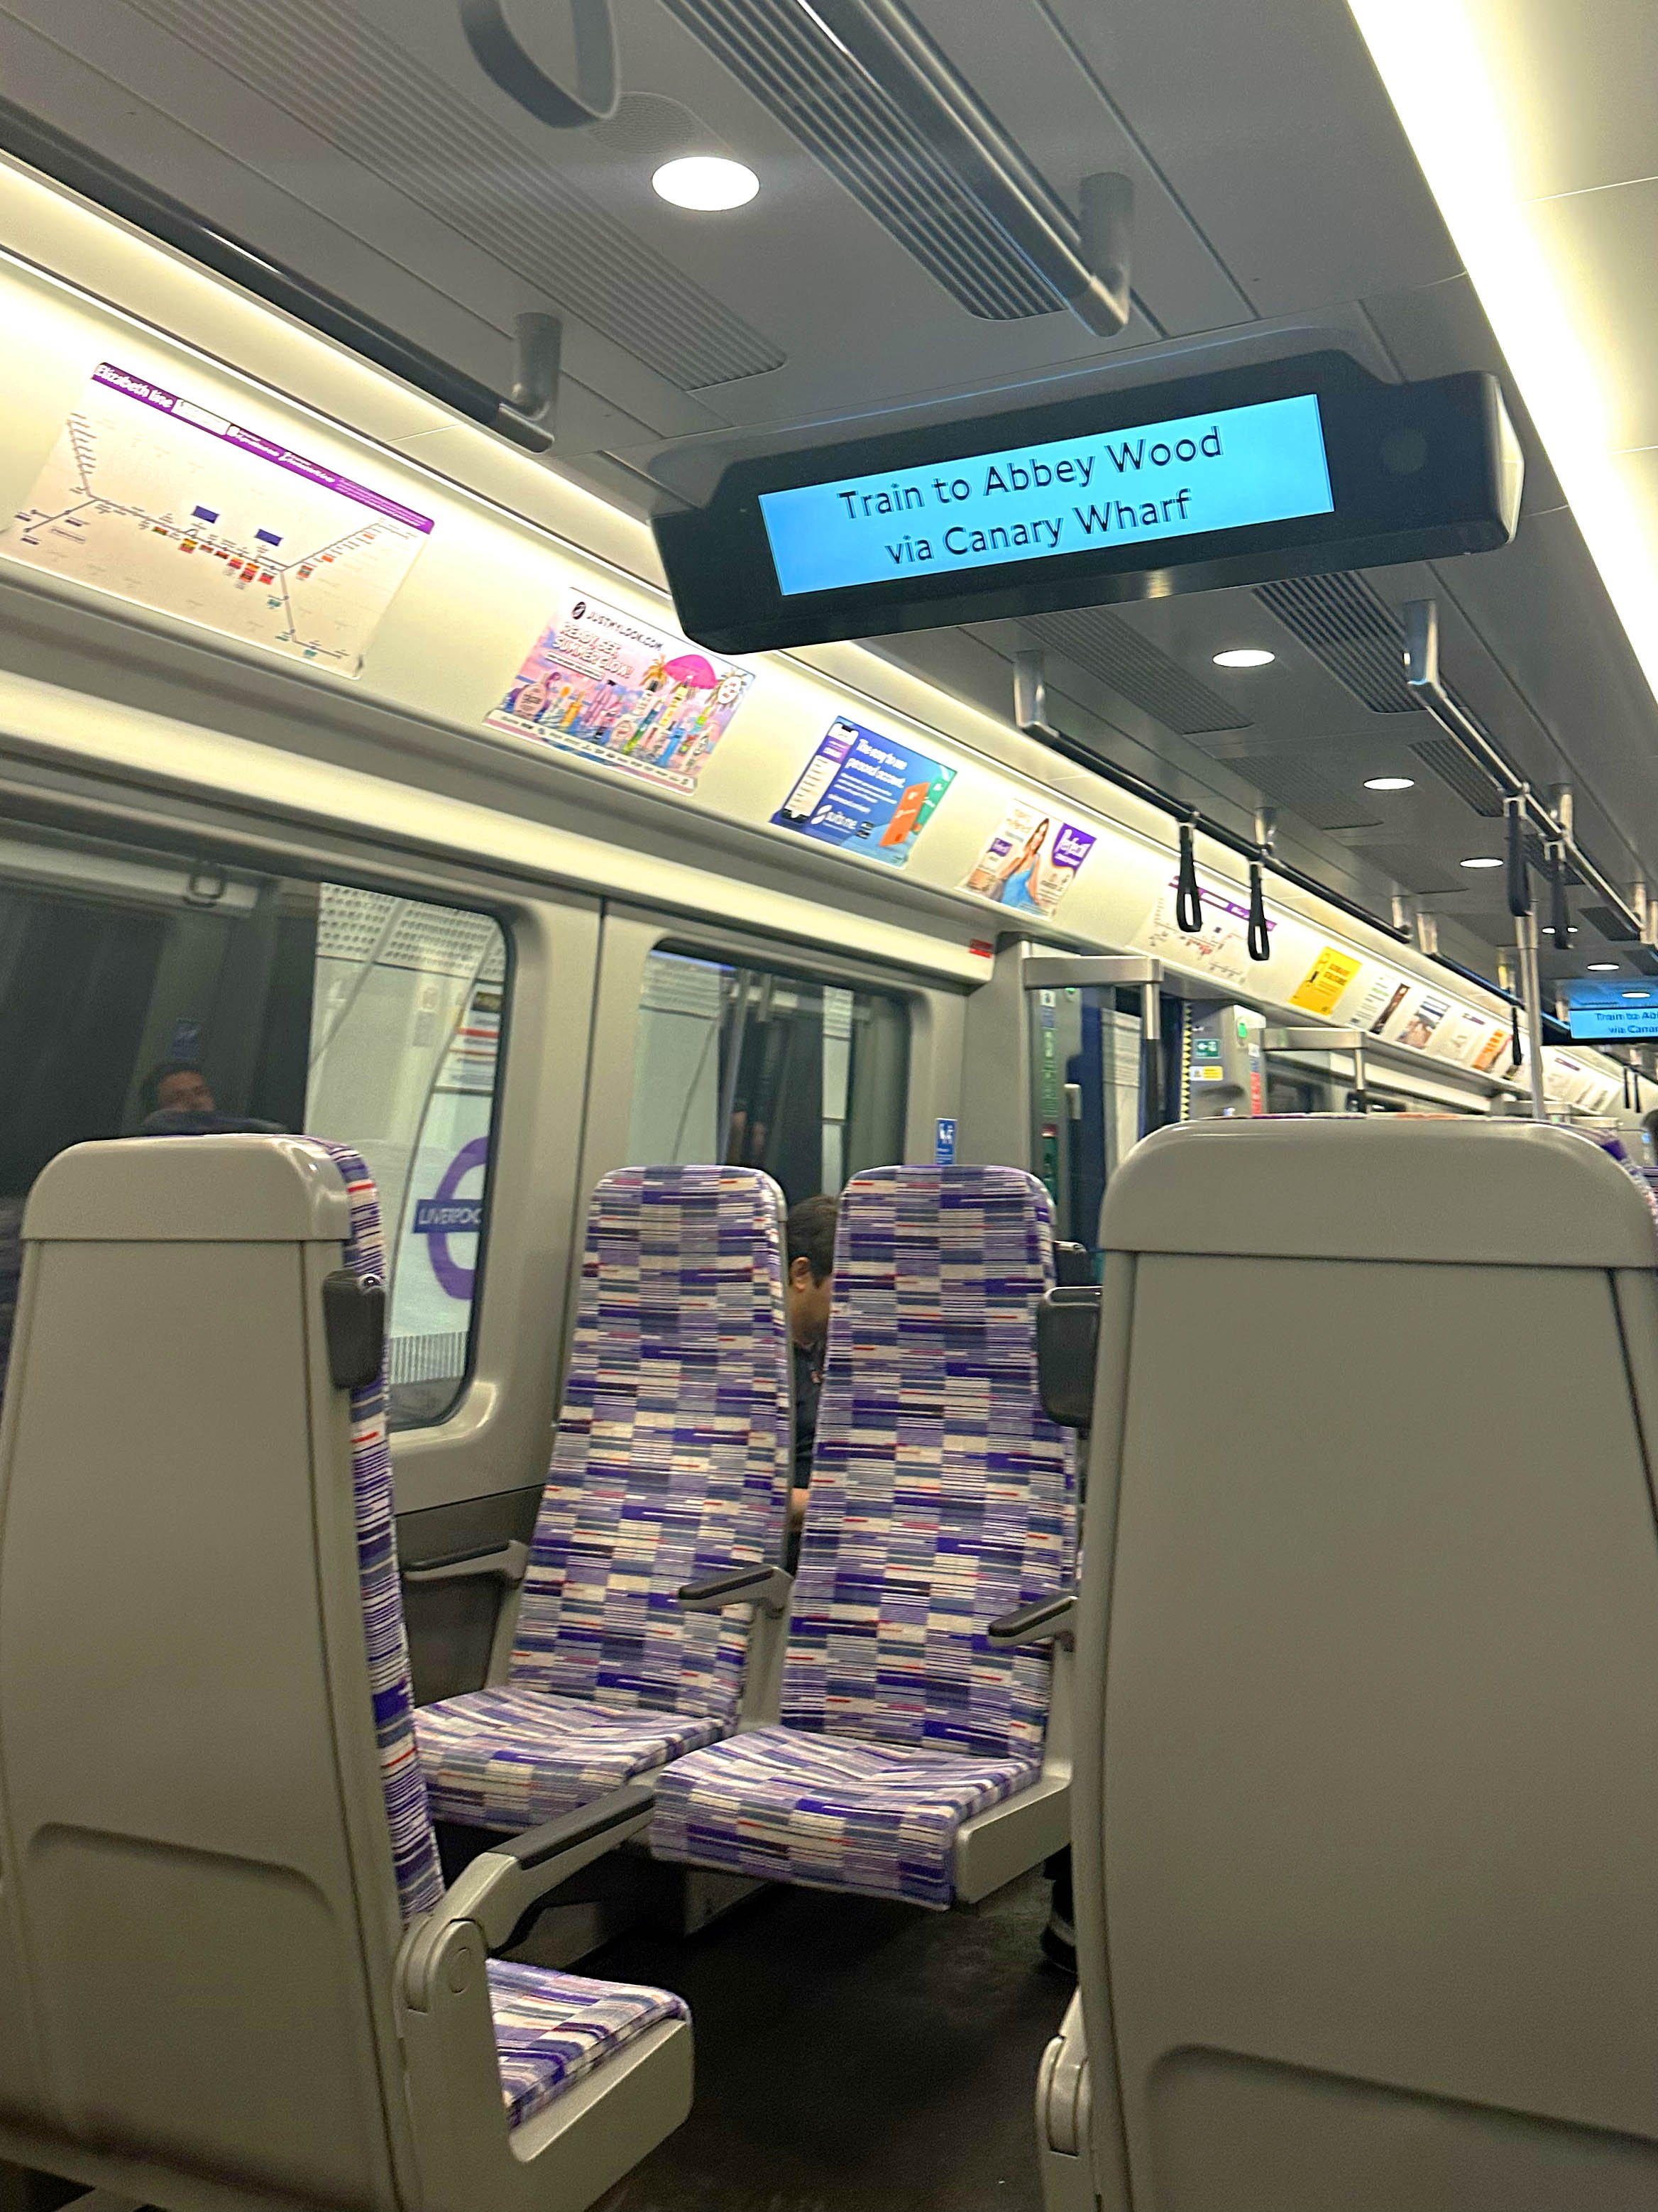 Even the seats are purple.